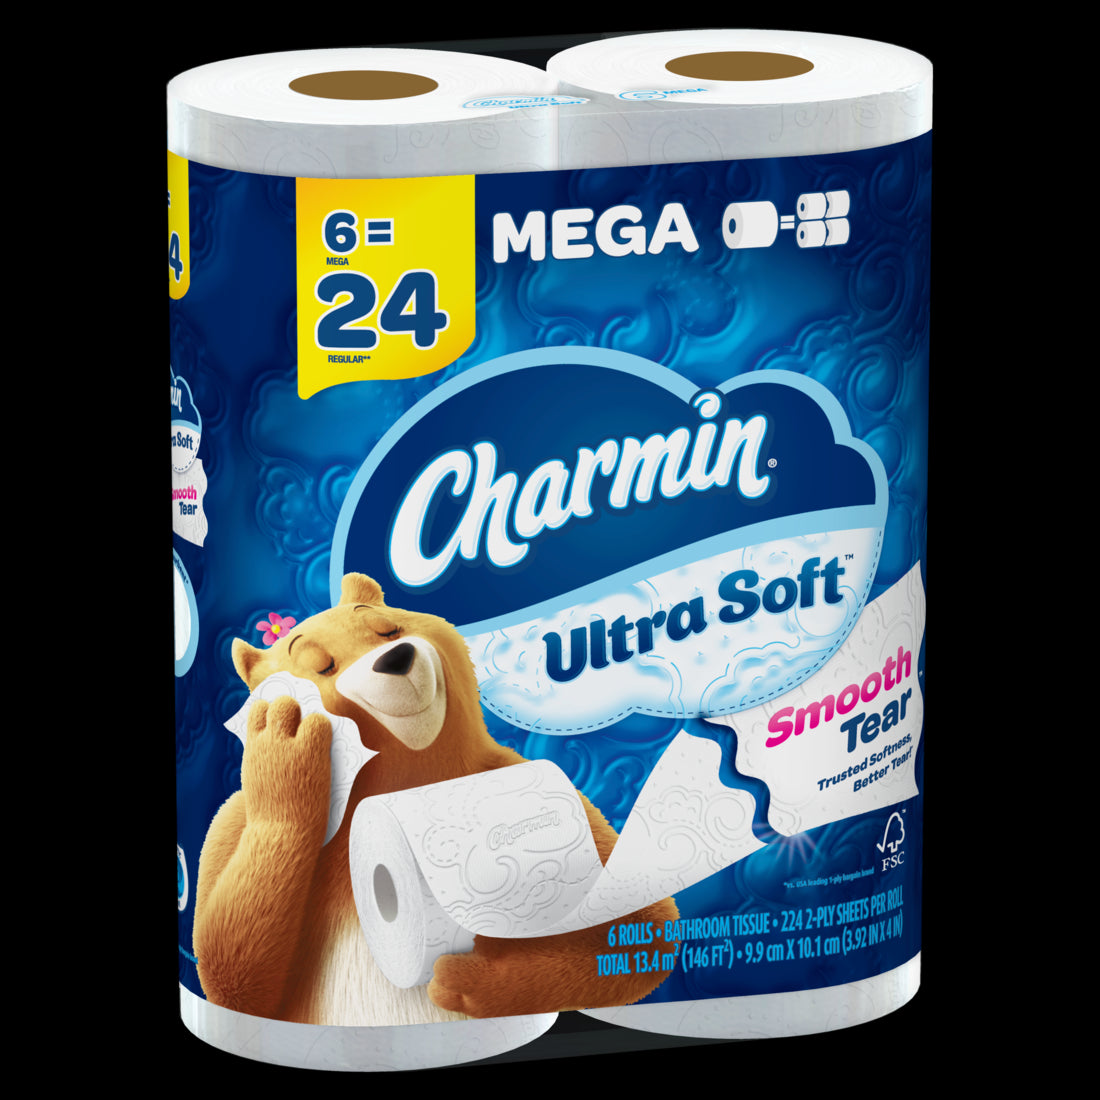 Charmin Ultra Soft Toilet Paper 6 Mega Rolls 224 Sheets Per Roll - 6ct/1pk